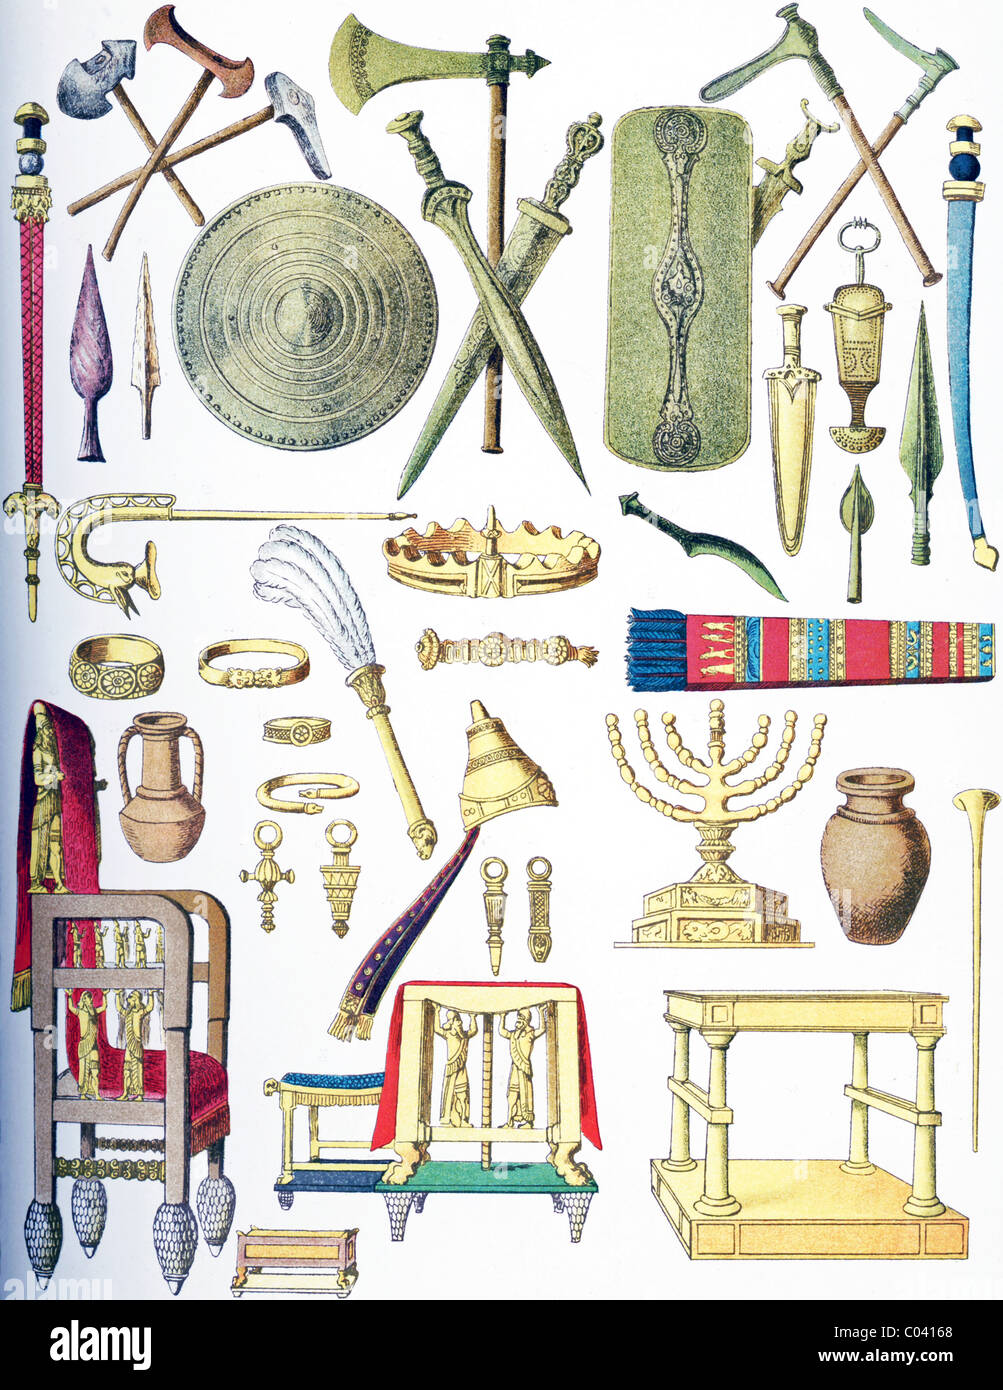 Die Objekte im Bild sind aus alten Zeiten: europäisch, Sarmaten, Assyrer, und jüdische. Stockfoto